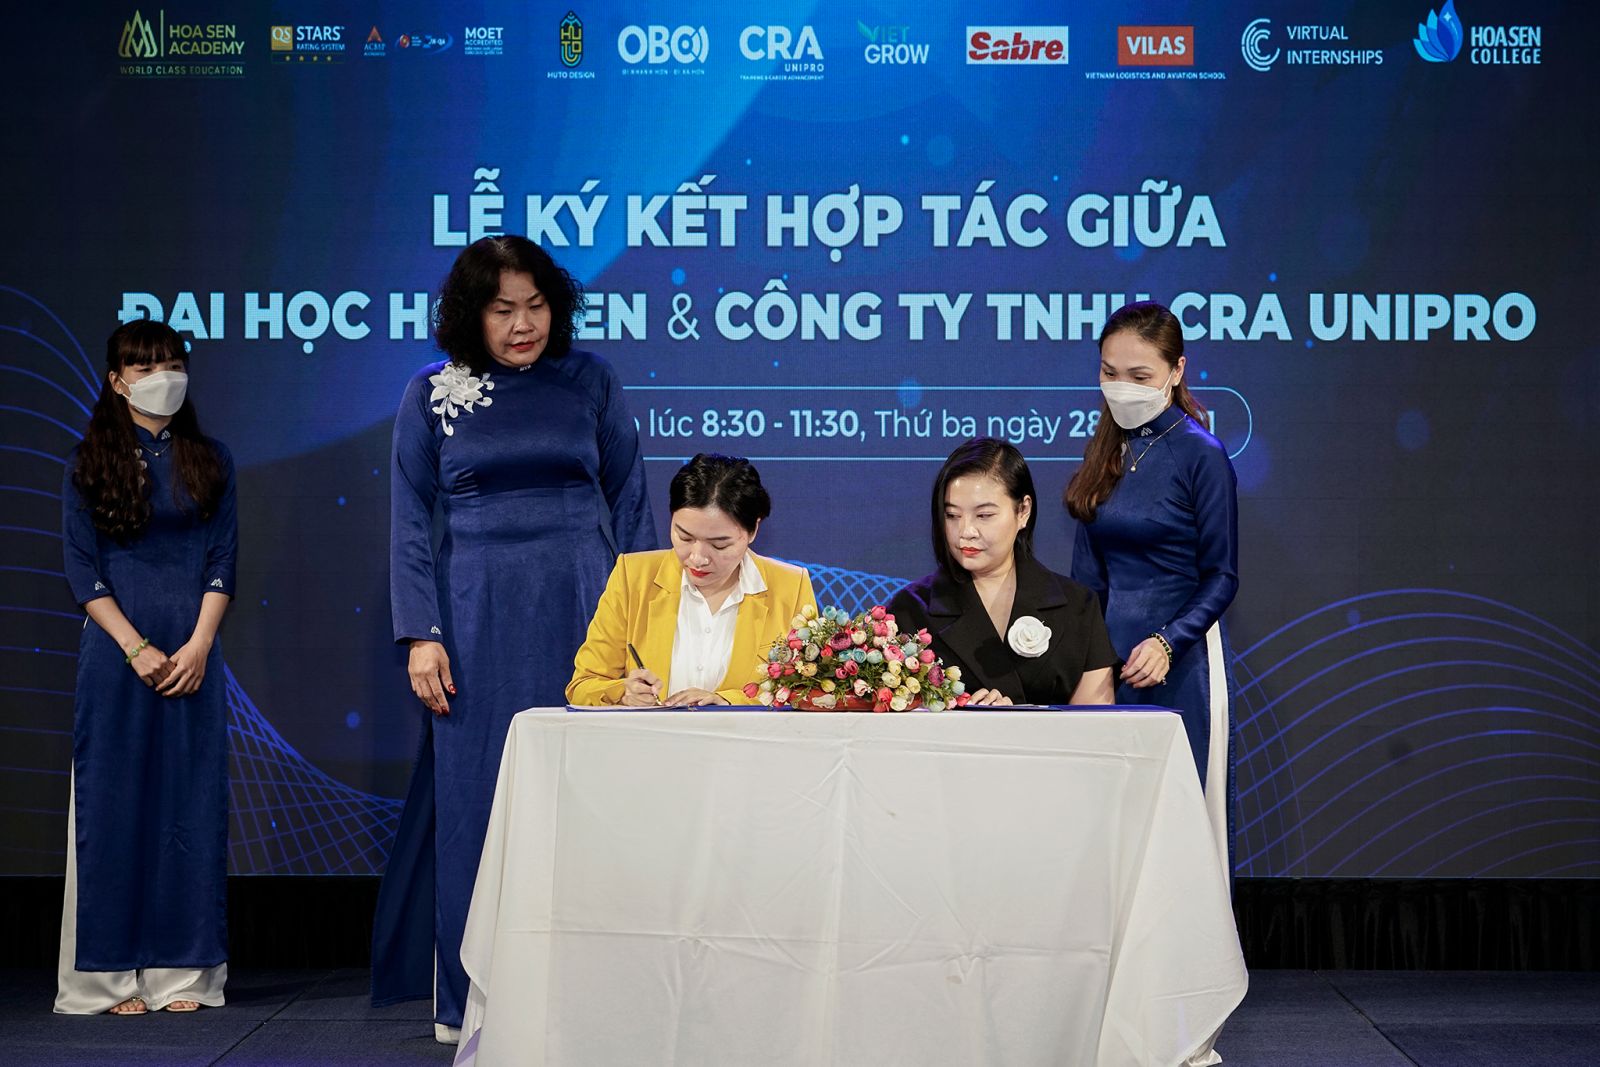 PGS.TS. Võ Ngọc Thuý – Hiệu trưởng ĐH Hoa Sen (áo vàng) và bà Tina Nguyễn – Giám đốc Vận hành CRA cùng ký kết hợp tác